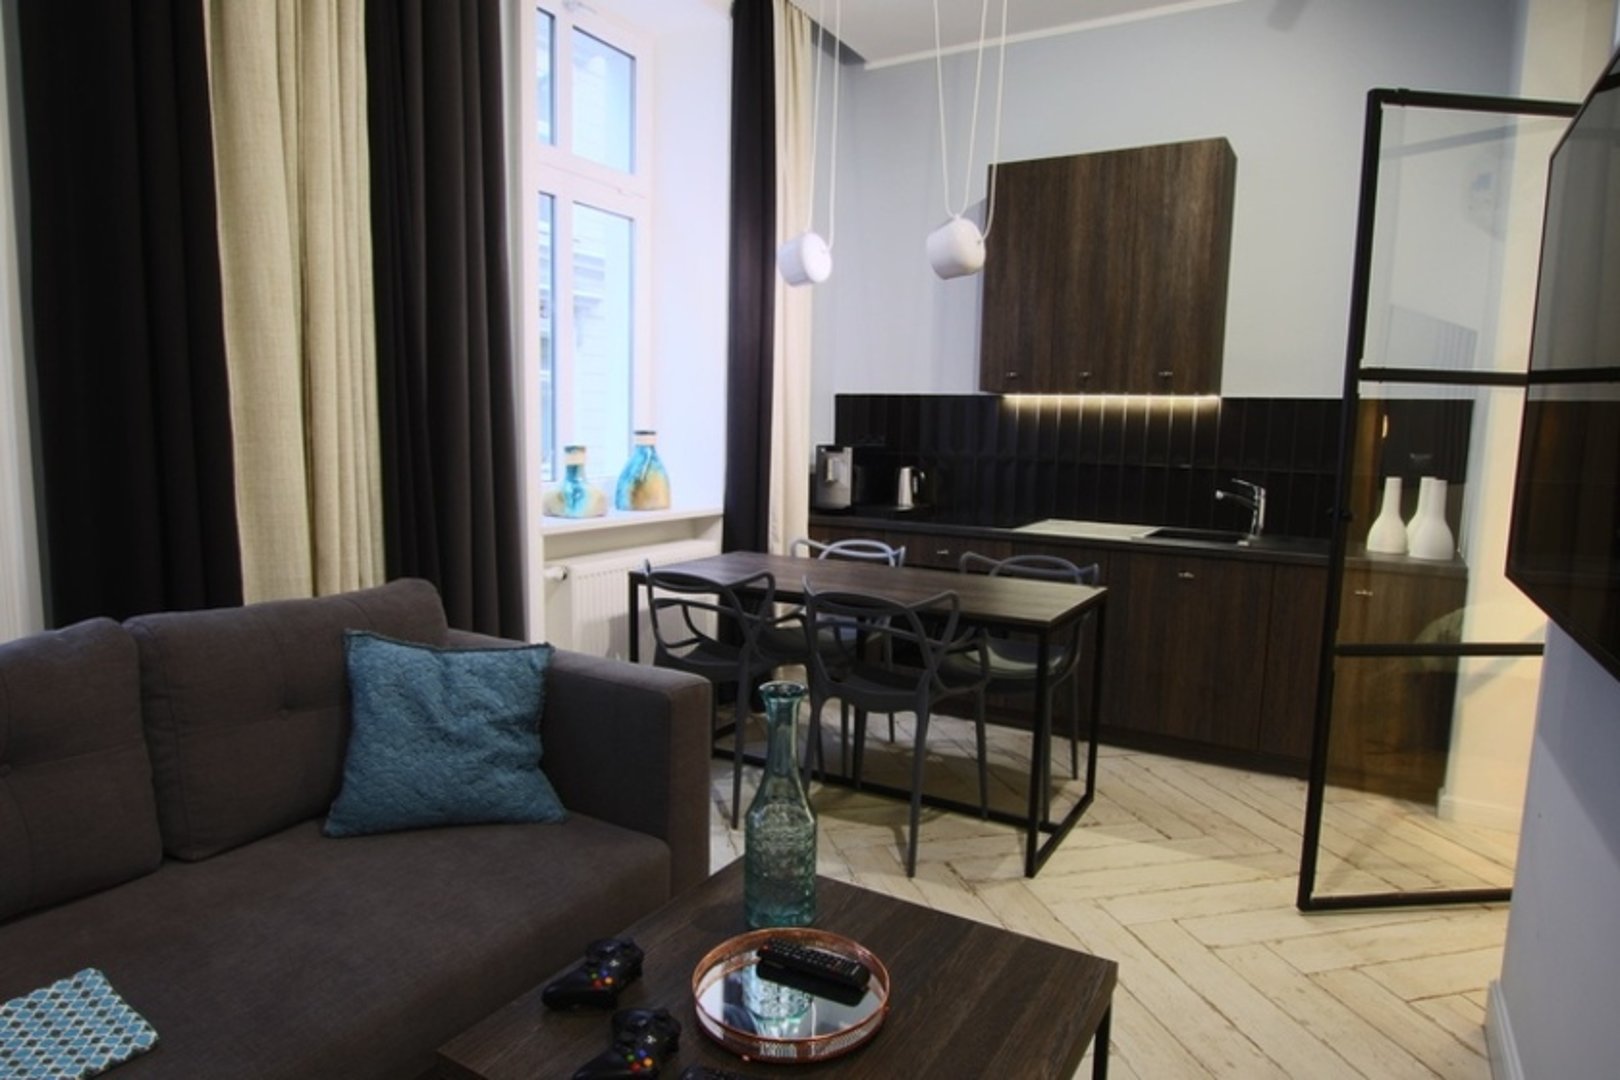 Najlepsze apartamenty w Bydgoszczy - booking-bydgoszcz Apartament Batorego 2/4A, Apartament Batorego 2/4C